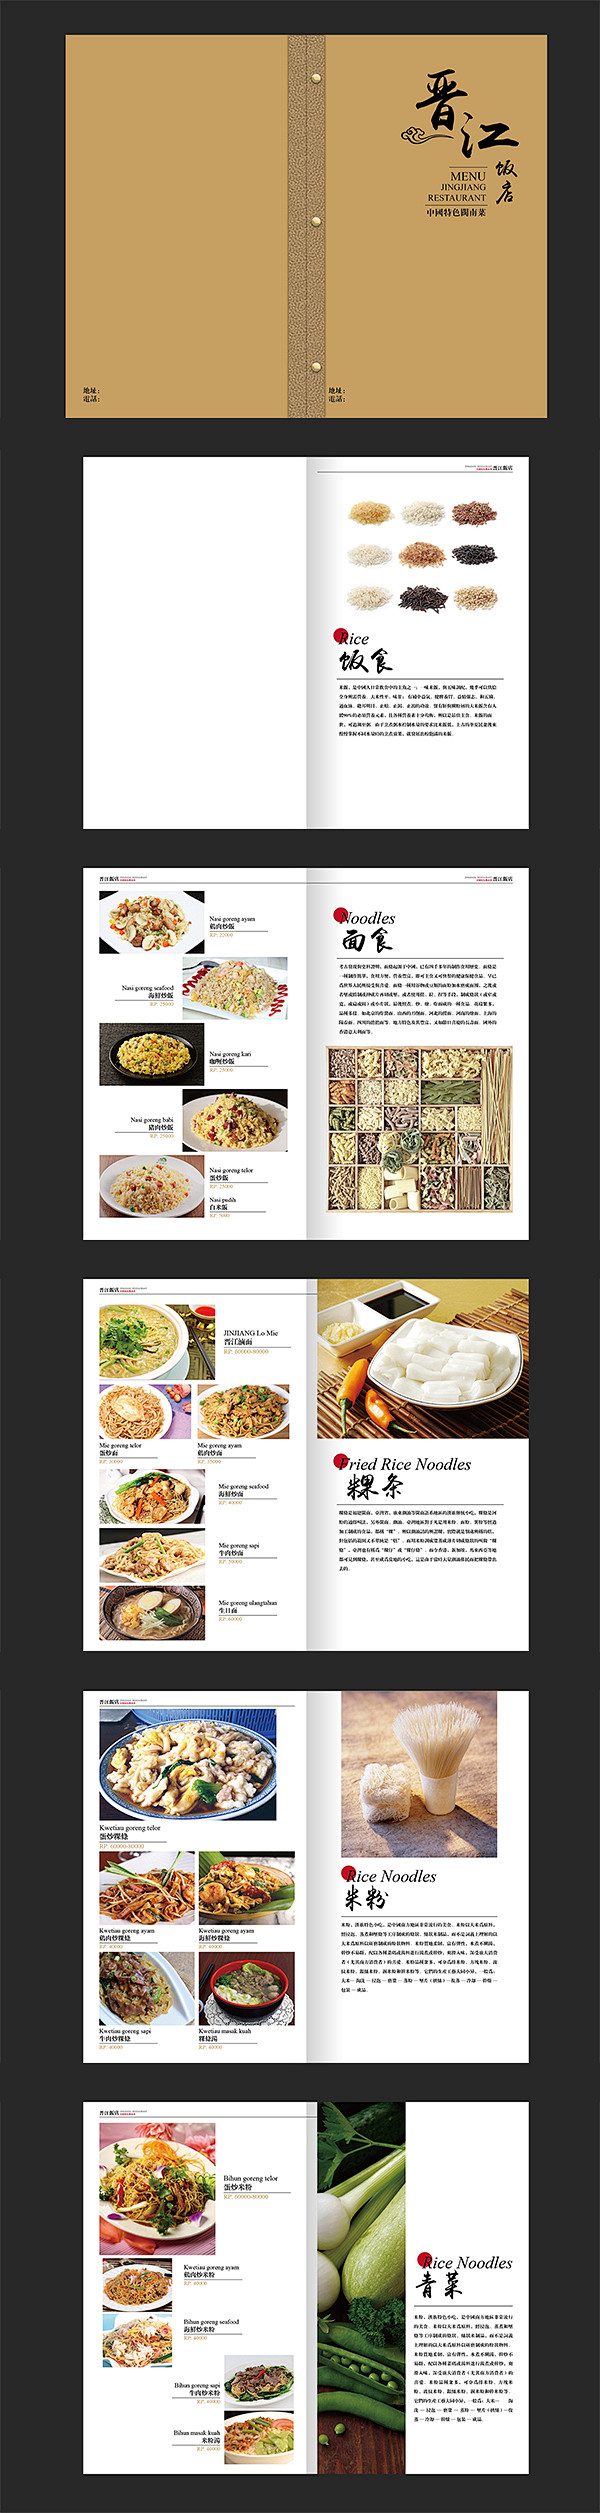 画面排版设计、餐牌设计、菜单设计